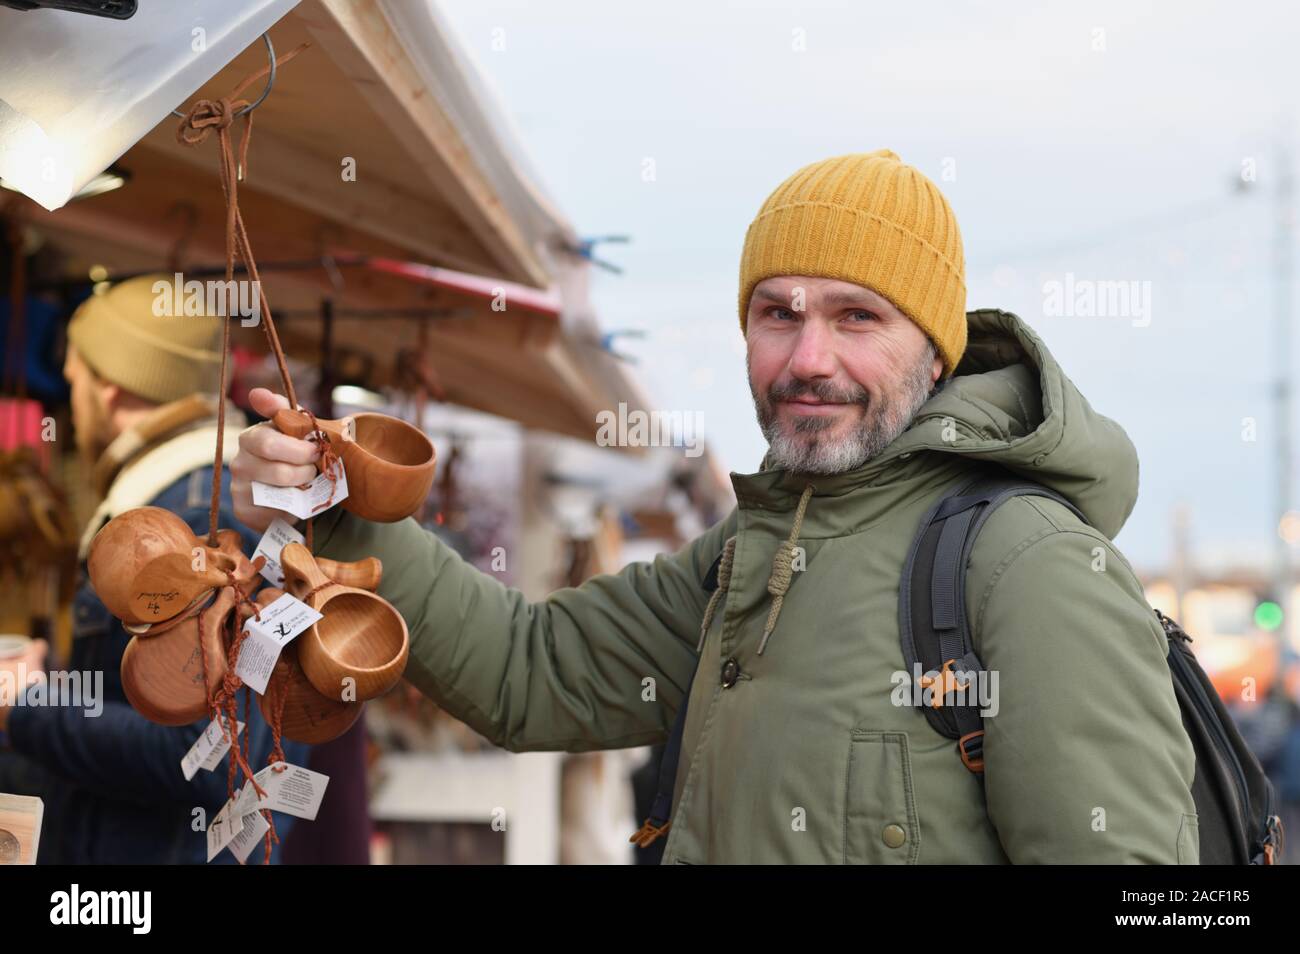 Maturo uomo barbuto con zaino selezionando la kuksa, Finlandese Tradizionale coppa di legno, il mercatino di Natale in piazza Kauppatori a Helsinki, finlan Foto Stock